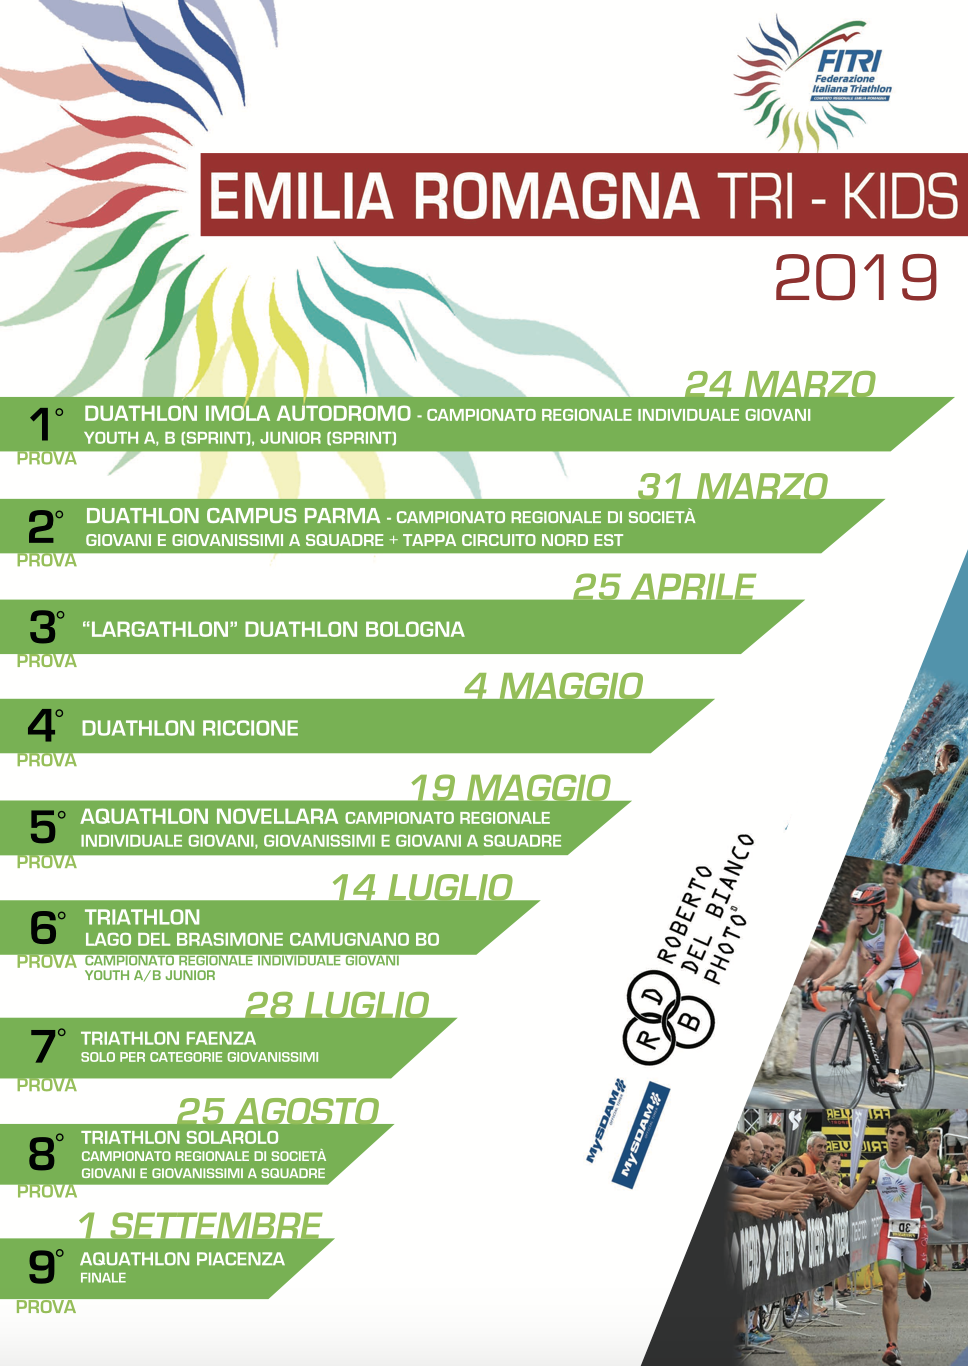 images/emiliaromagna/Foto_Comitato_EmiliaRomagna_2019/medium/Locandina_Circuito_Emilia_Romagna_Tri-Kids_2019.png